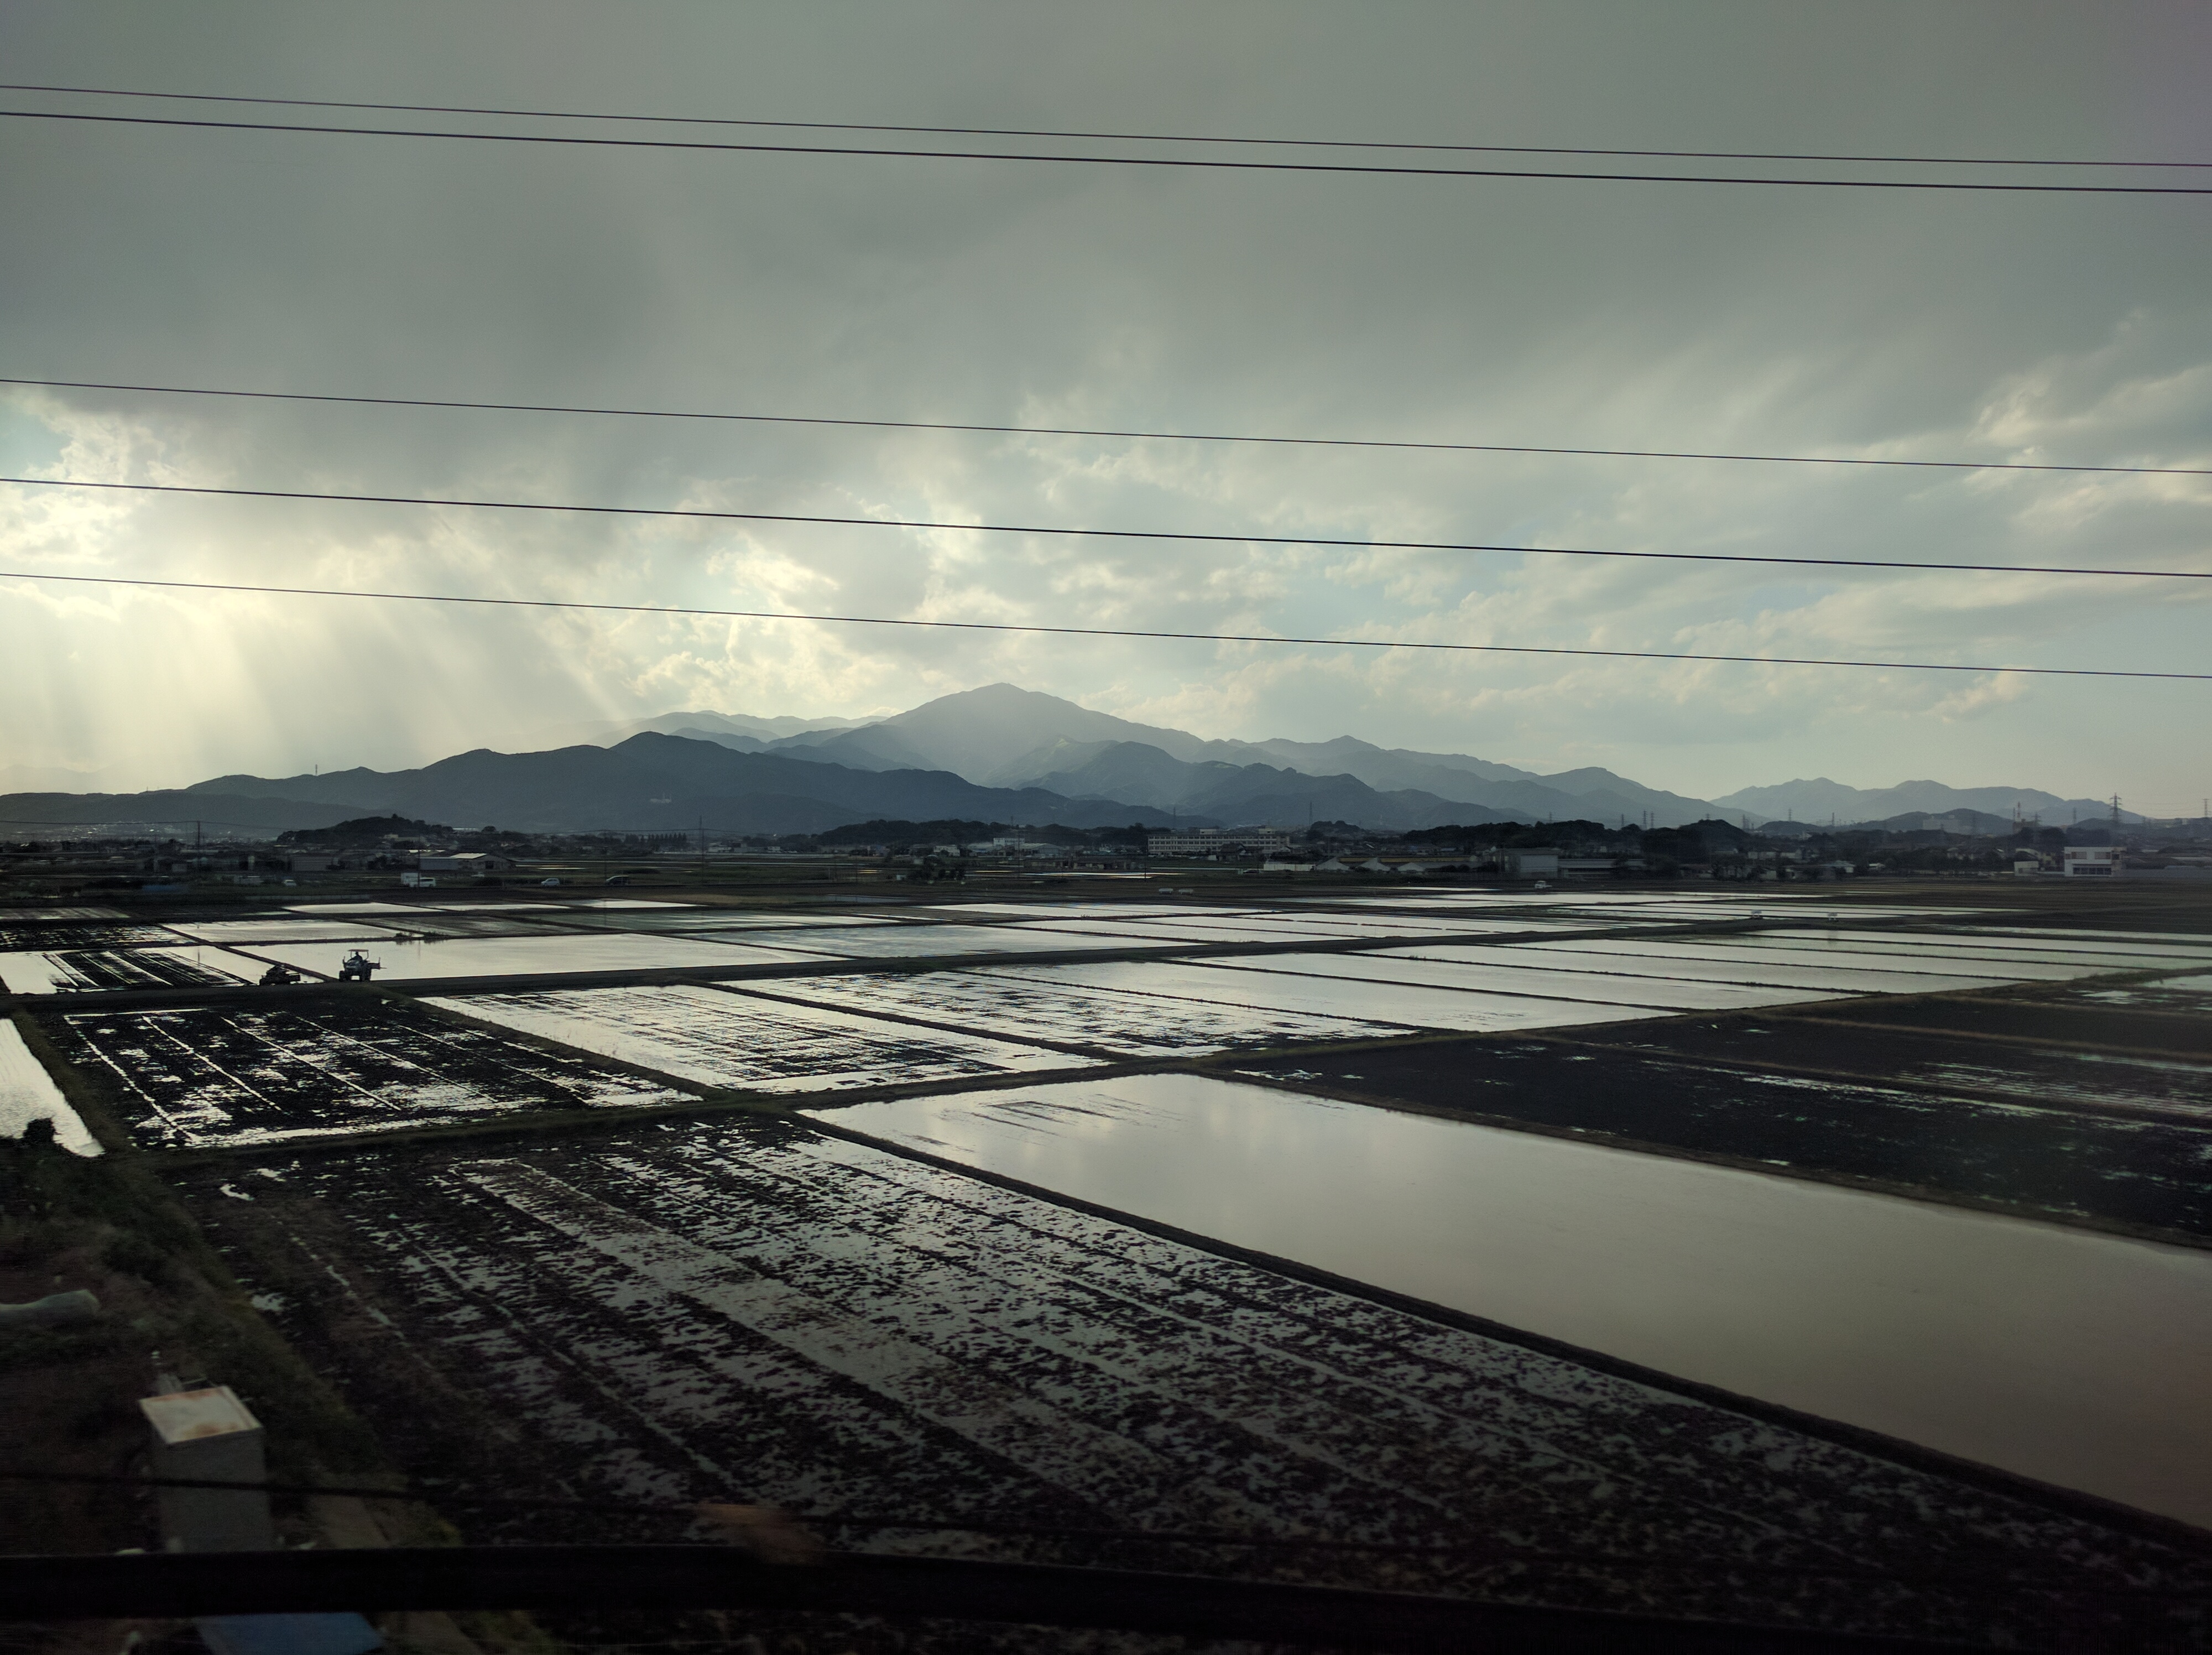 Fuji Countryside from Shinkansen